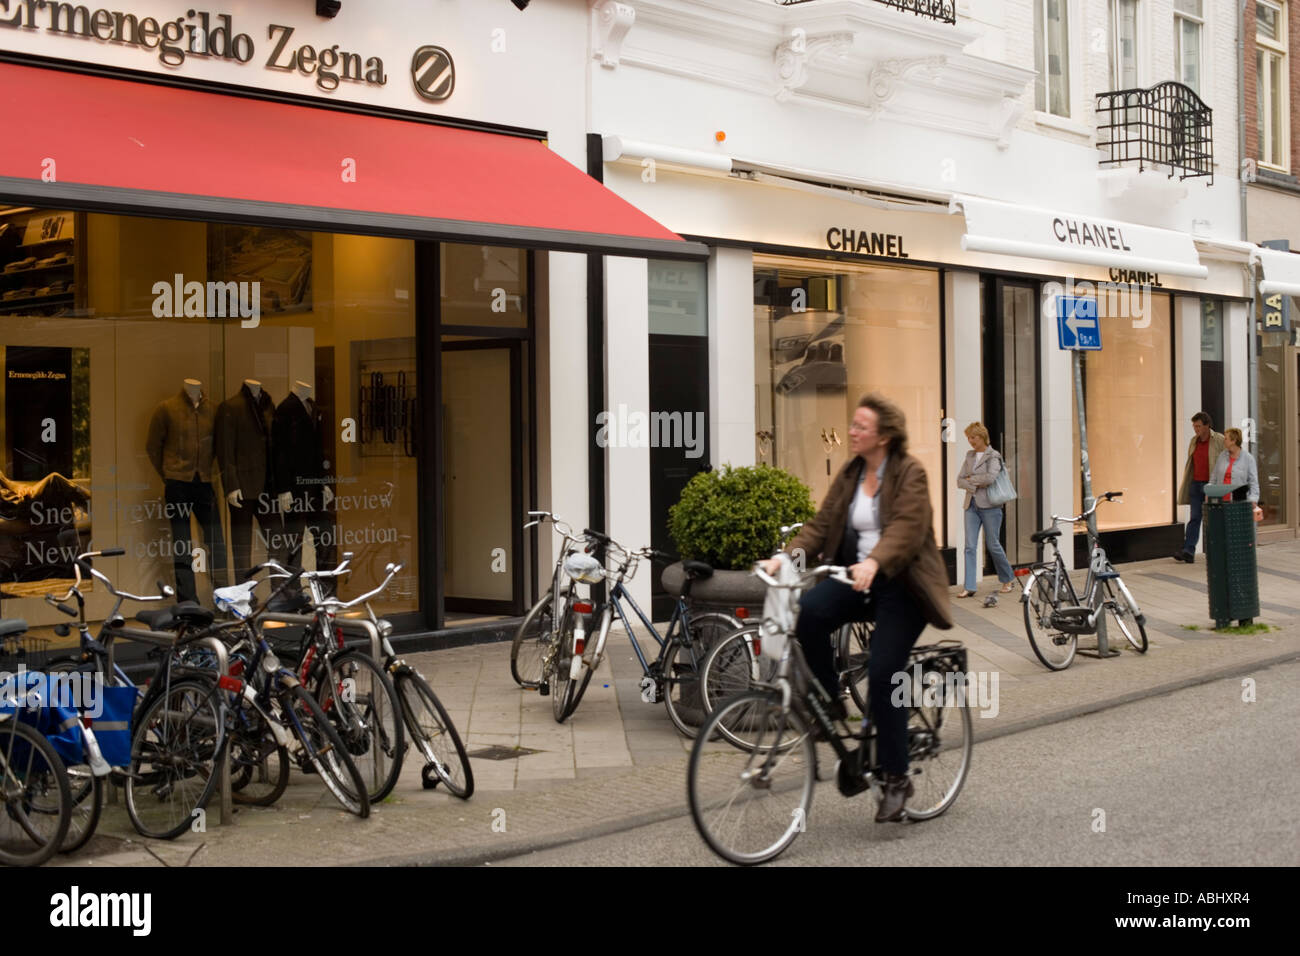 Vitrine de cycliste passant un luxe chemisier P C Hooftstraat Amsterdam Hollande Pays-Bas Banque D'Images